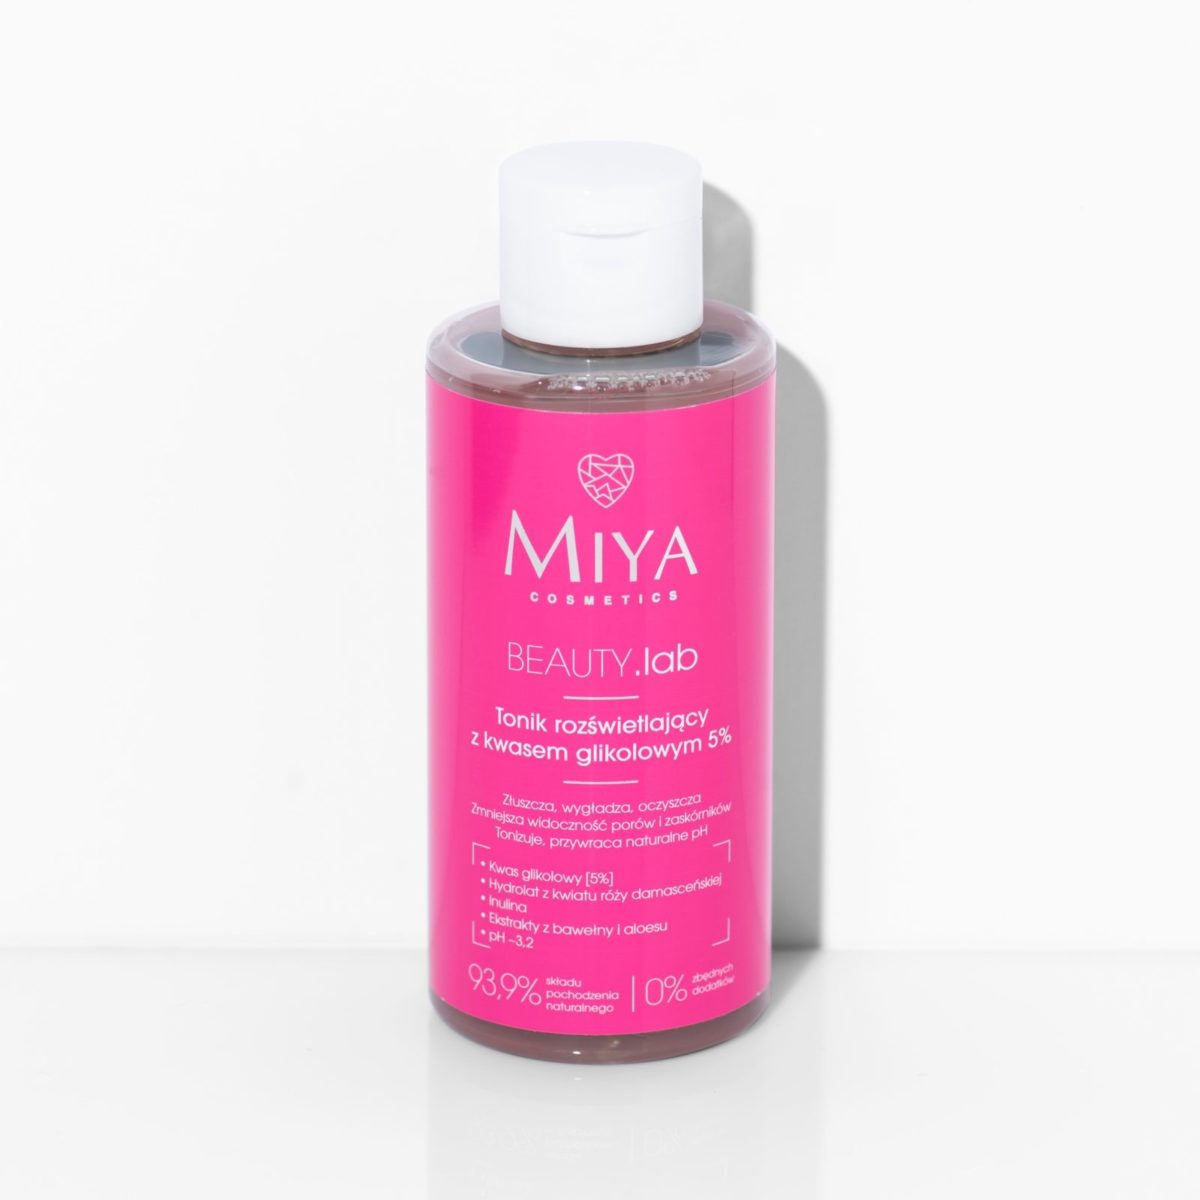 MIYA Cosmetics - Tonik Rozświetlający z Kwasem Glikolowym 5%